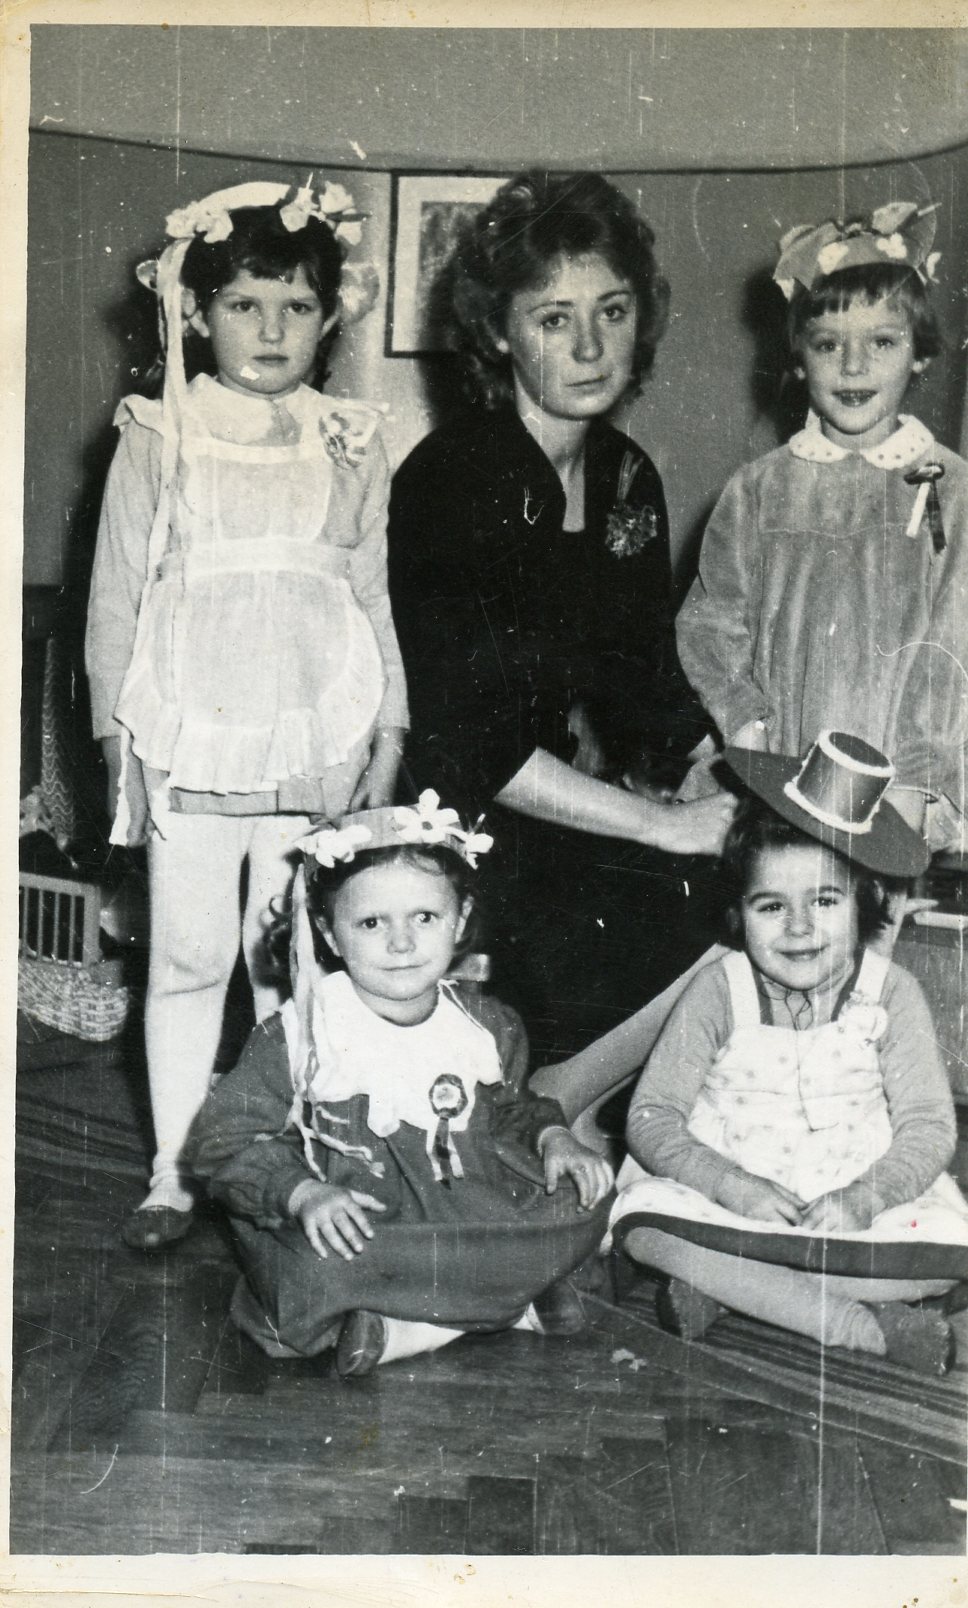 czwórka dzieci w nakryciach głowy a w środku nauczycielka przedszkolna